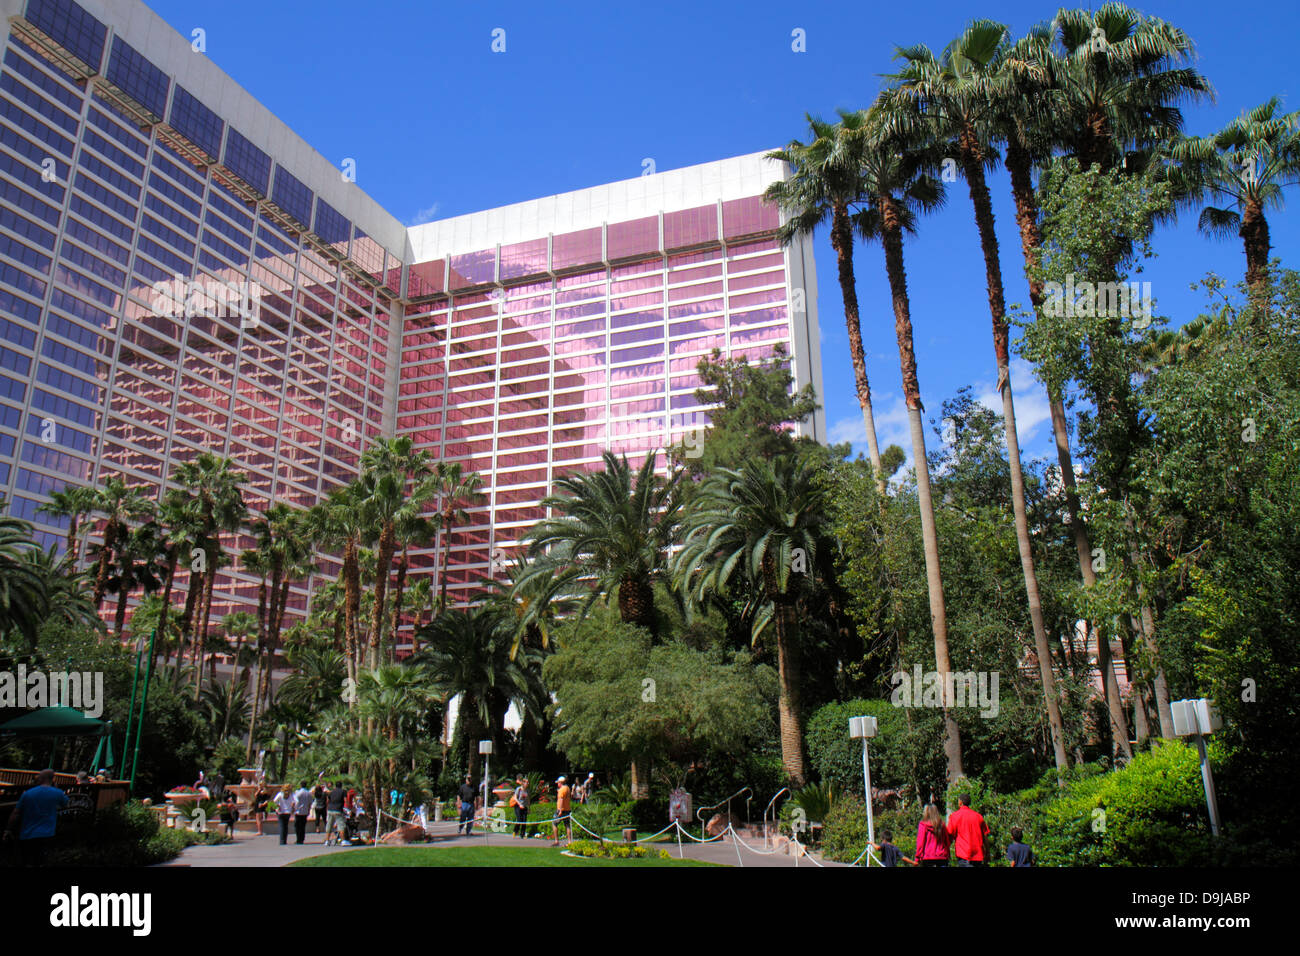 Las Vegas Nevada, The Strip, South Las Vegas Boulevard, Flamingo Las Vegas Hotel & Casino, giardino, cortile, NV130401025 Foto Stock